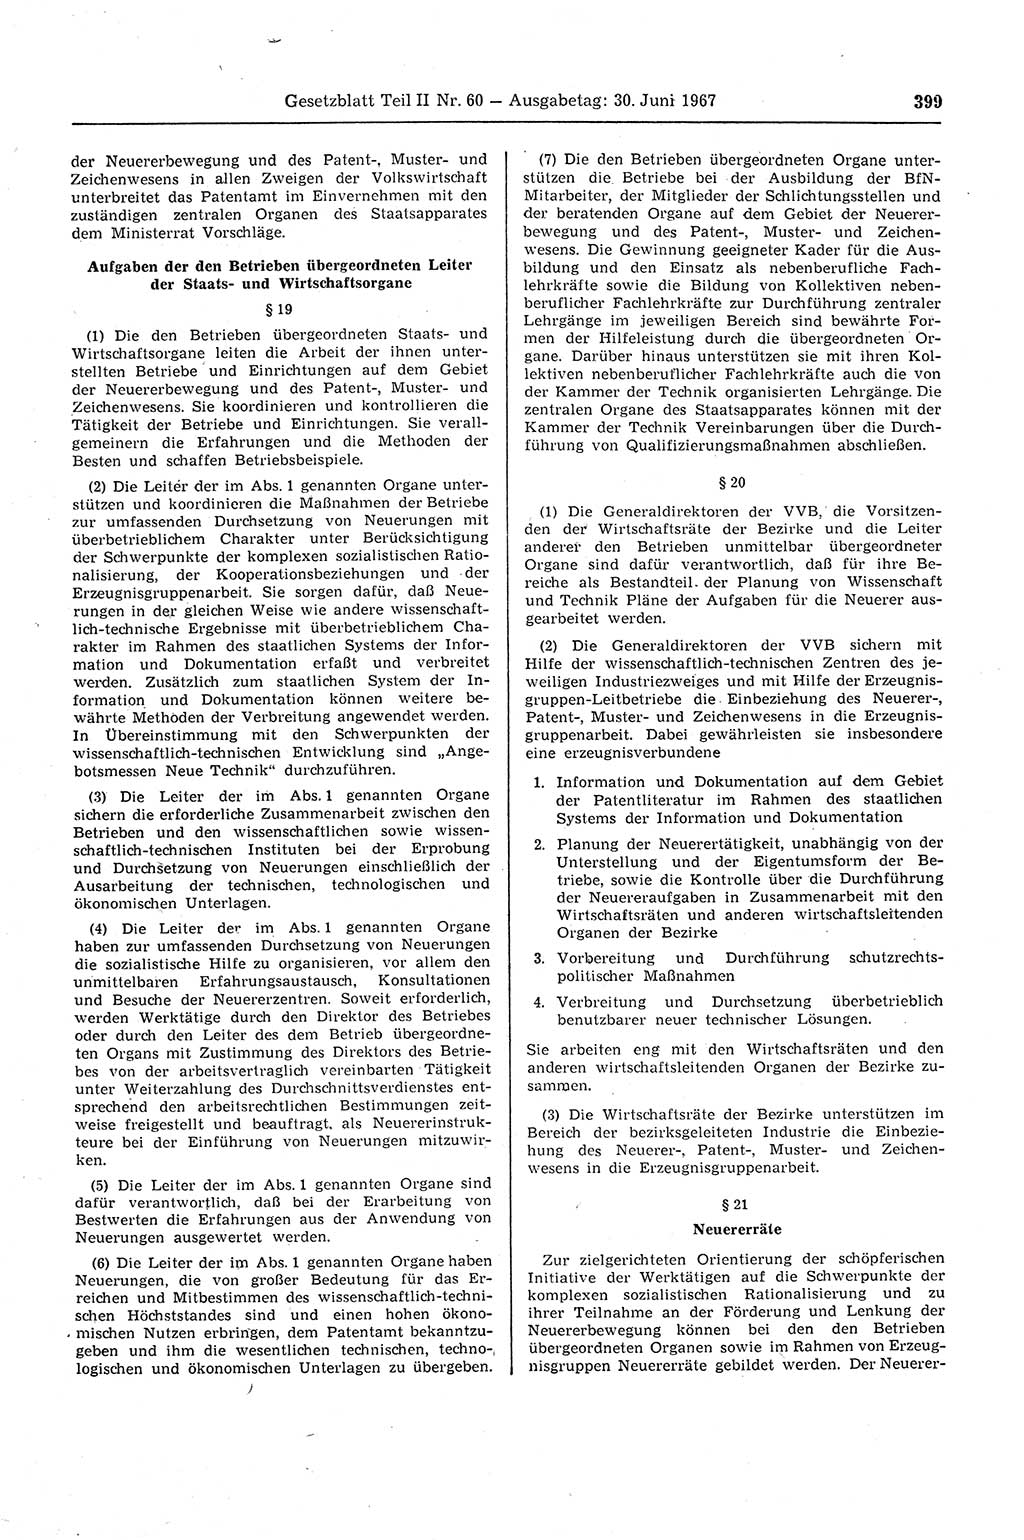 Gesetzblatt (GBl.) der Deutschen Demokratischen Republik (DDR) Teil ⅠⅠ 1967, Seite 399 (GBl. DDR ⅠⅠ 1967, S. 399)